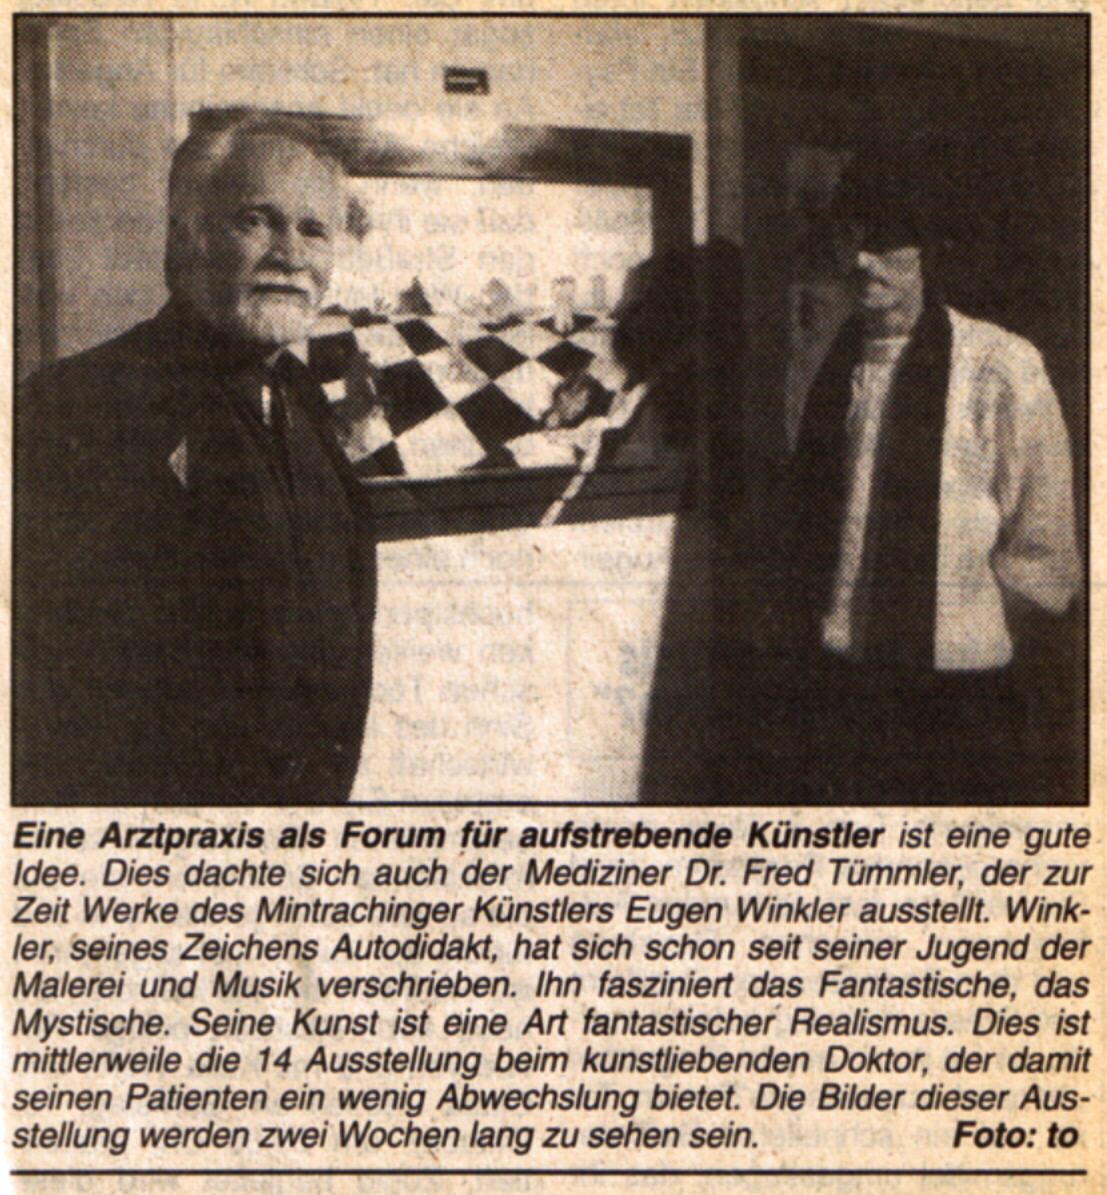 Dr. Fred Tümmler und Maler Eugen J. Winkler